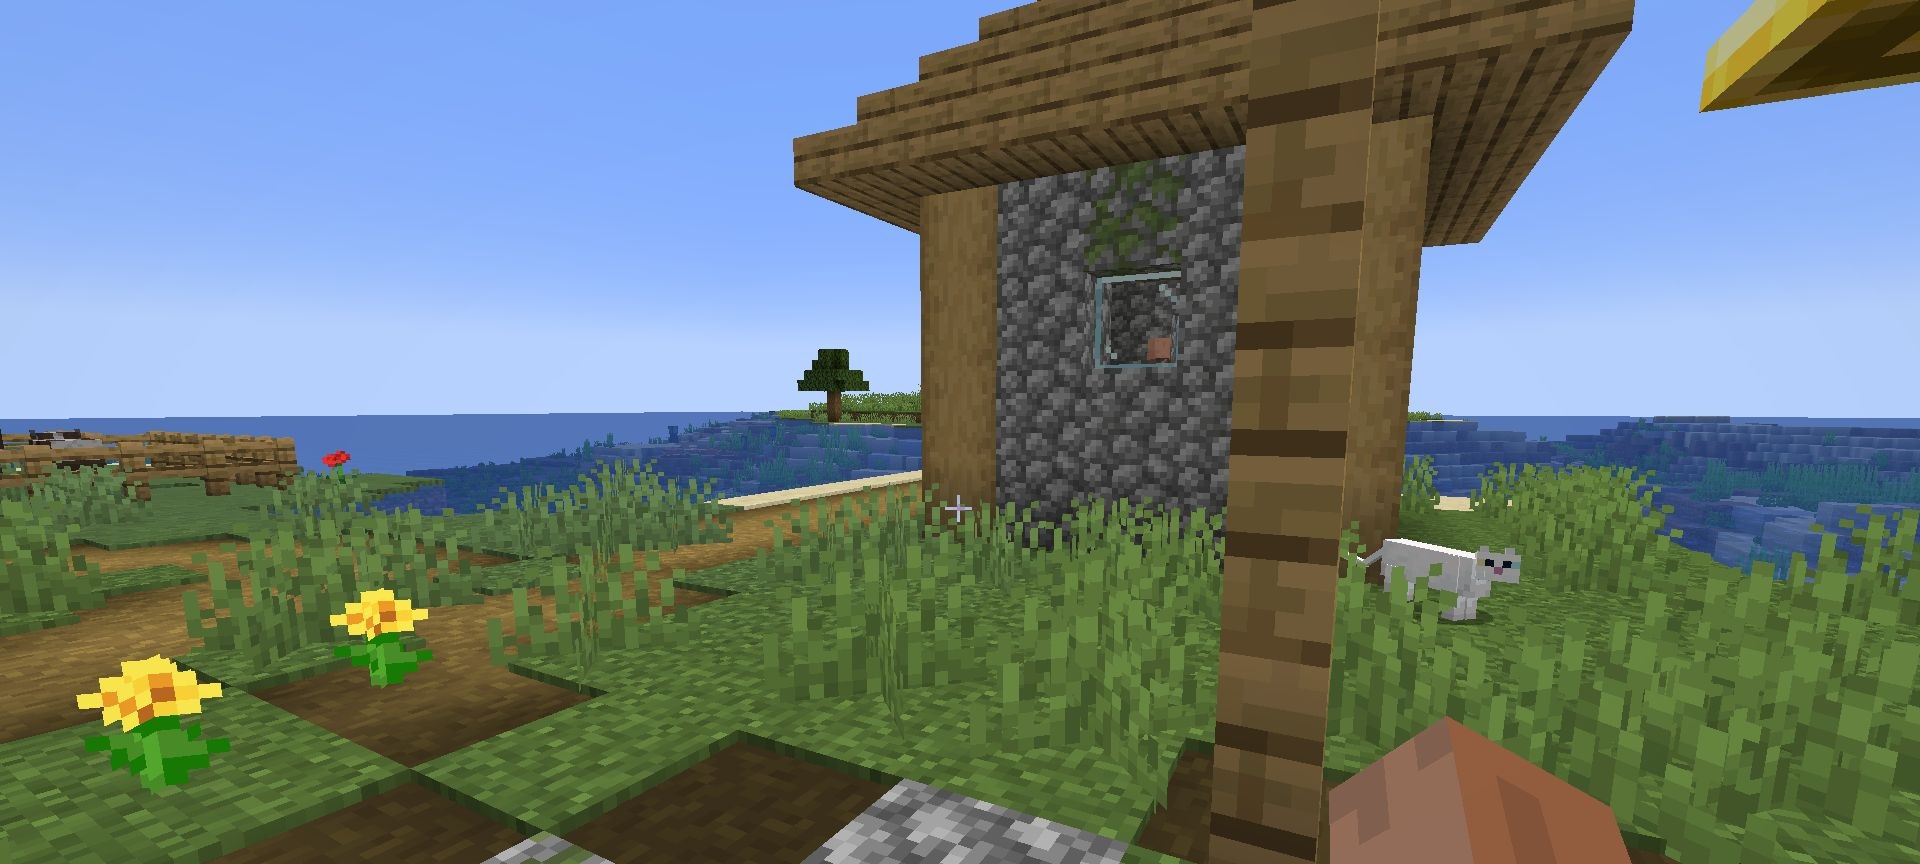 Pickable Villagers screenshot 3